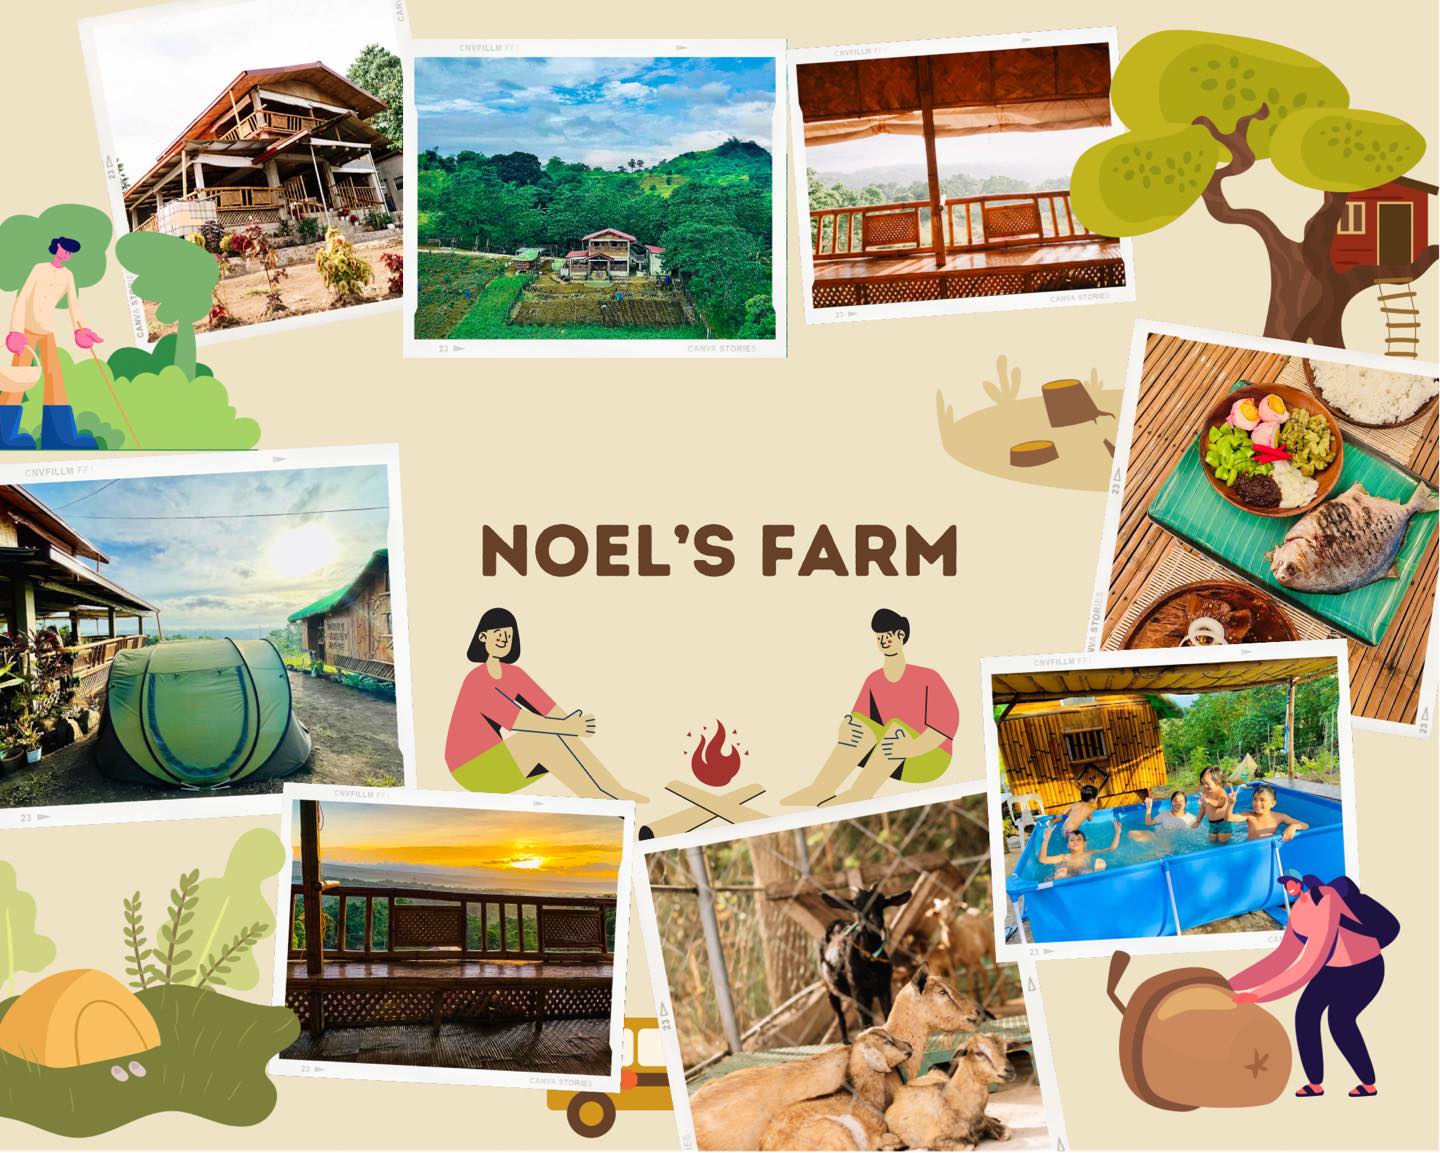 Noel's Farm - Morong, Rizal